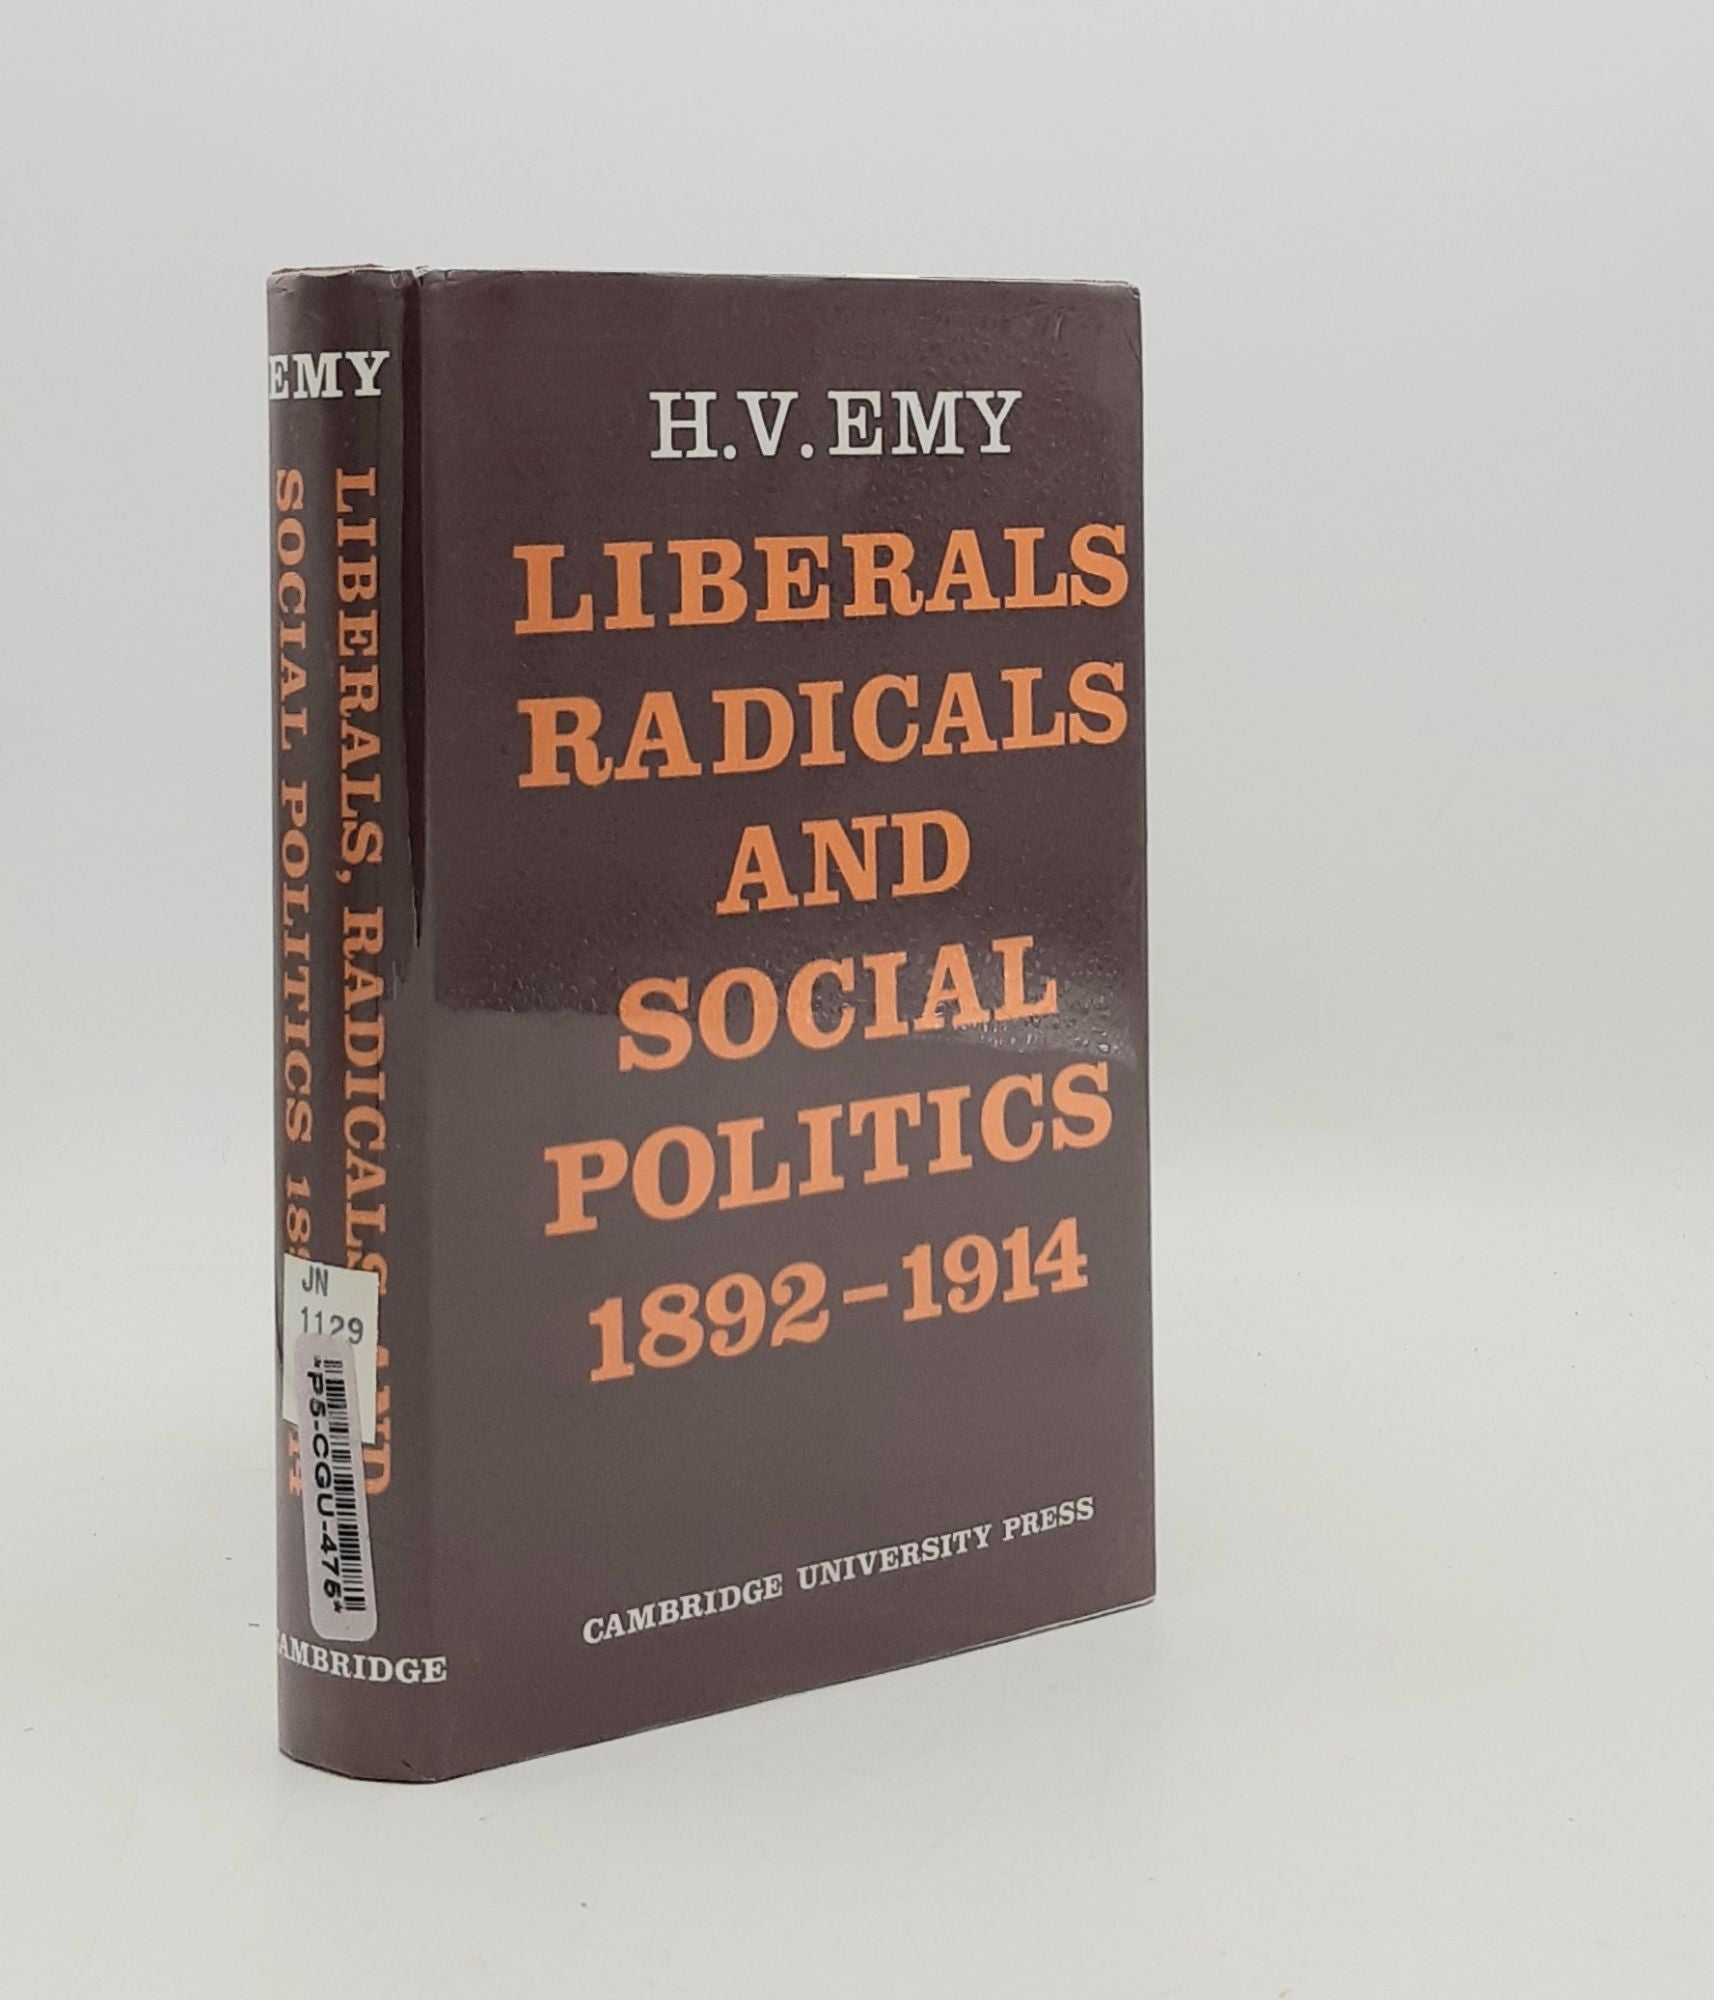 EMY H.V. - Liberals Radicals and Social Politics 1892-1914